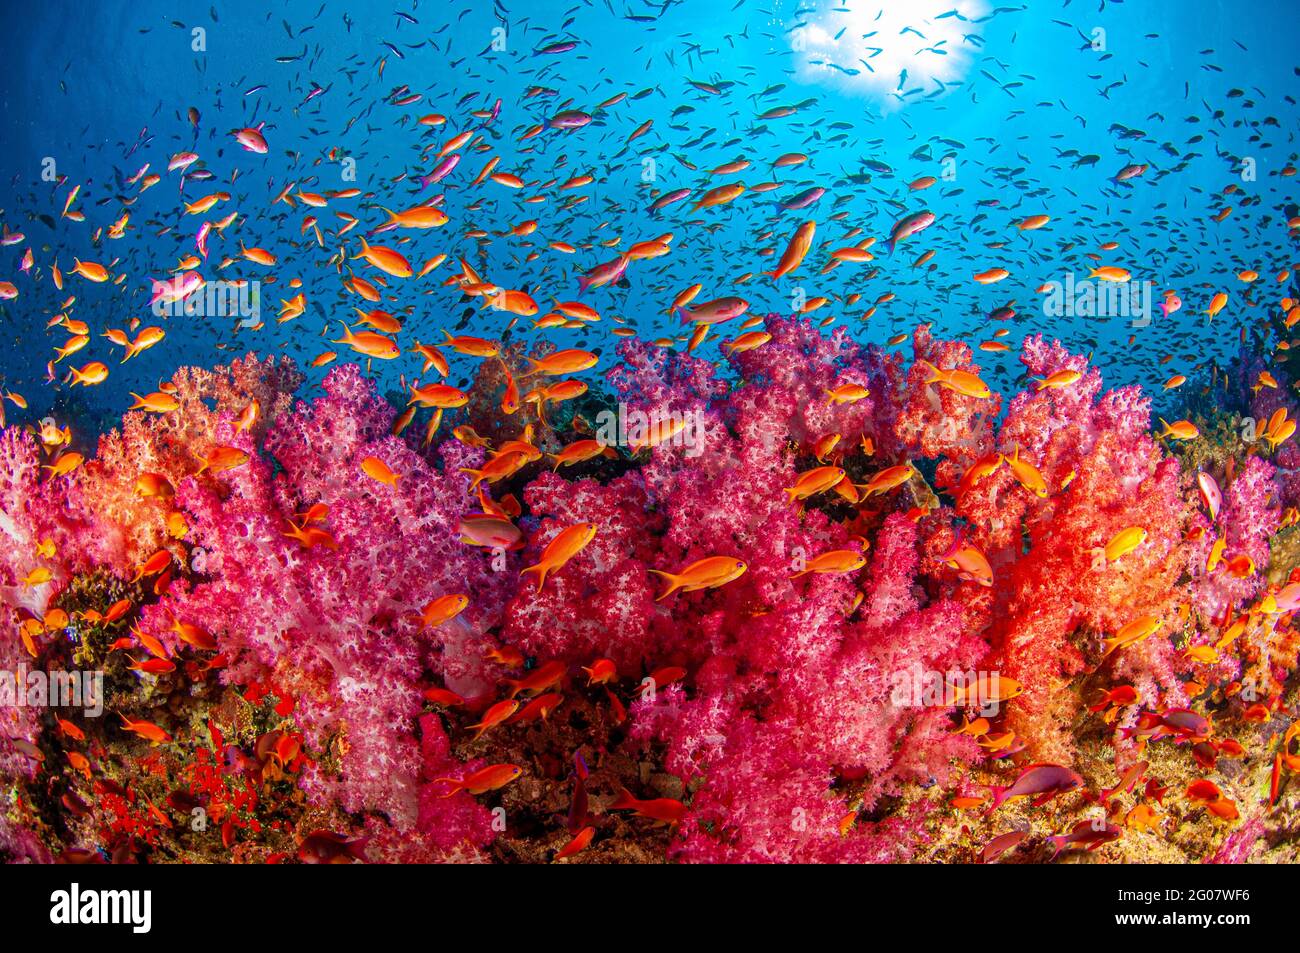 Soft coral reef. Fiji Stock Photo - Alamy